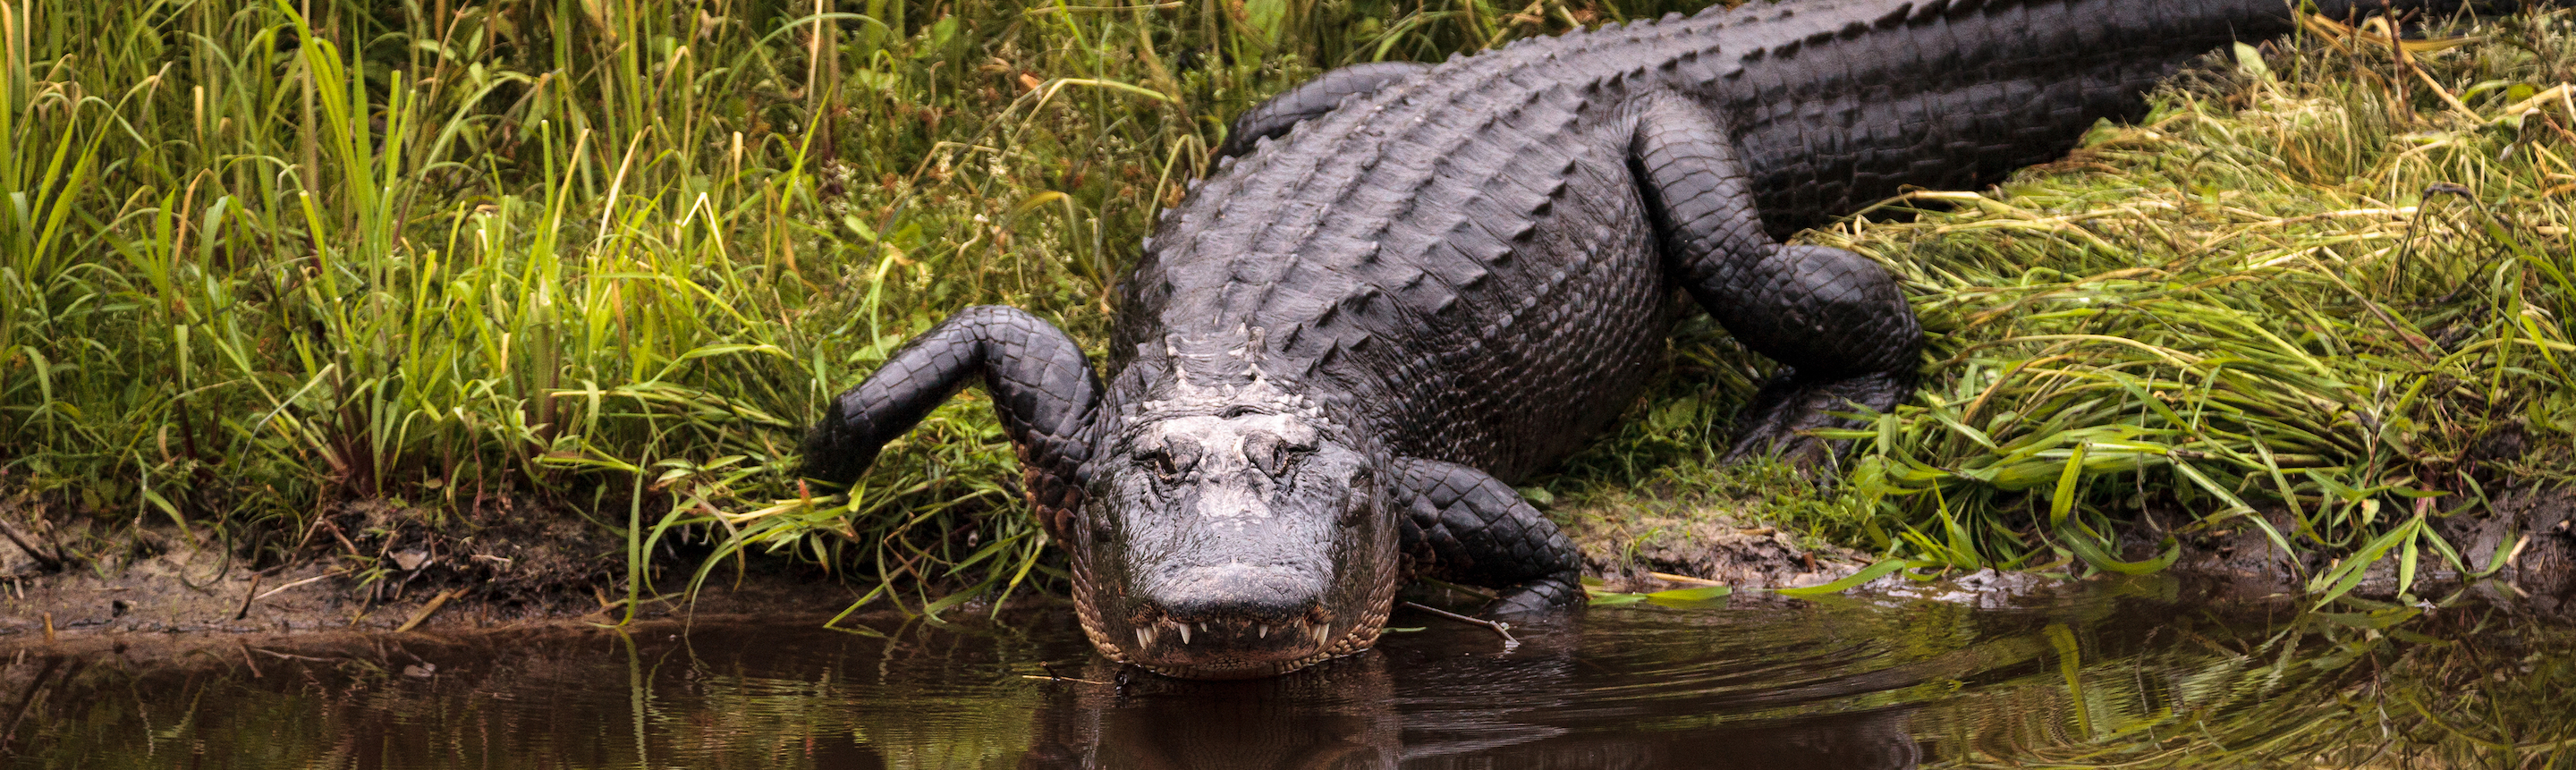 Alligator of Sweden 